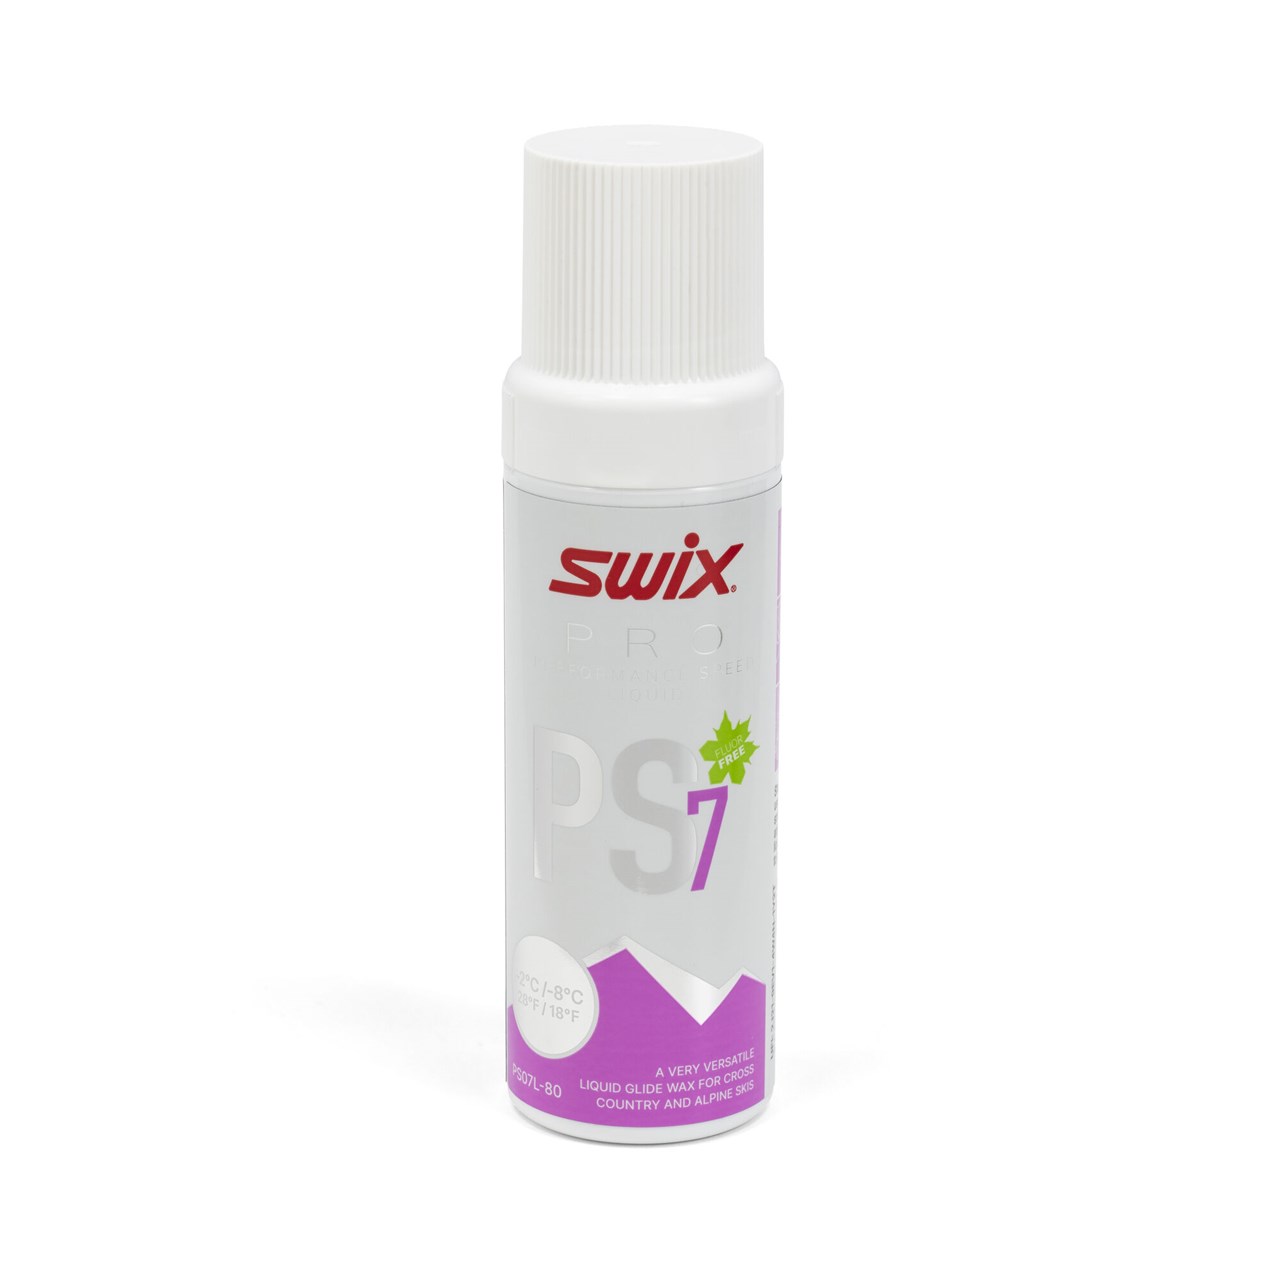 SWIX PS7 Liquid Violet